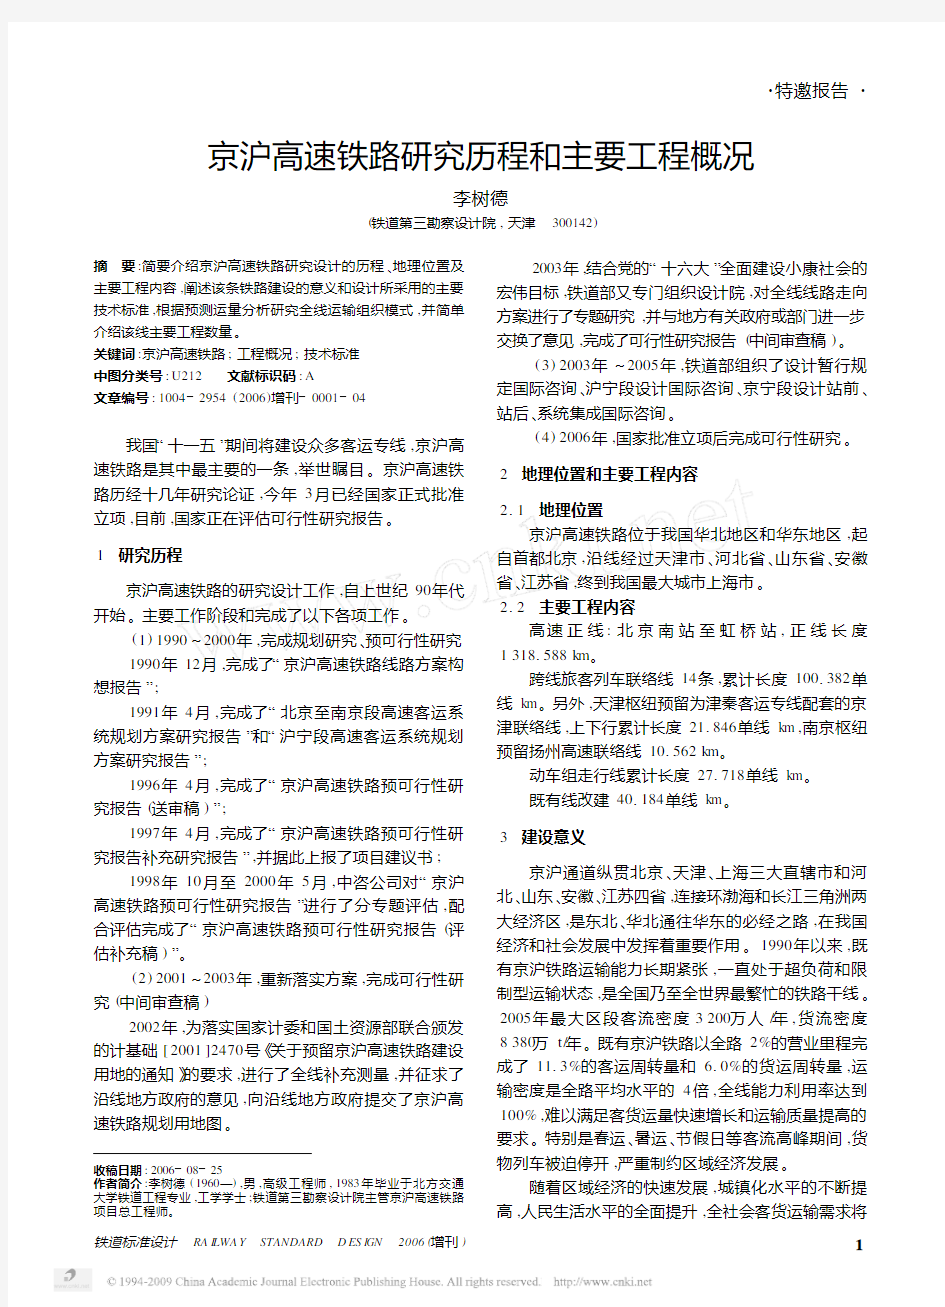 京沪高速铁路研究历程和主要工程概况